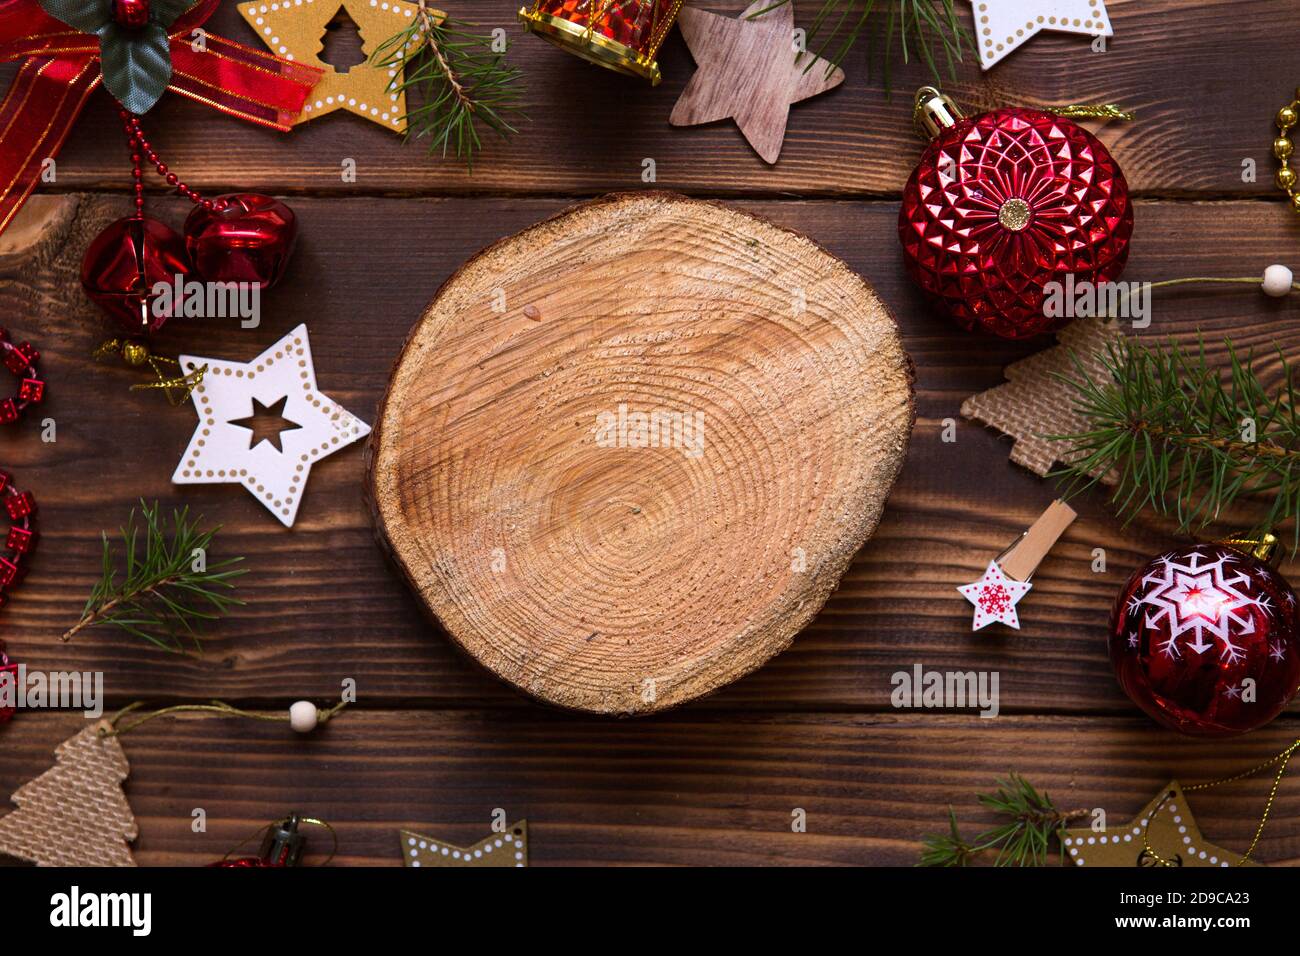 Piso de con globos rojos y estrellas de madera y clothespins sobre un fondo oscuro de tronco de árbol las notas en el centro. El marco de año